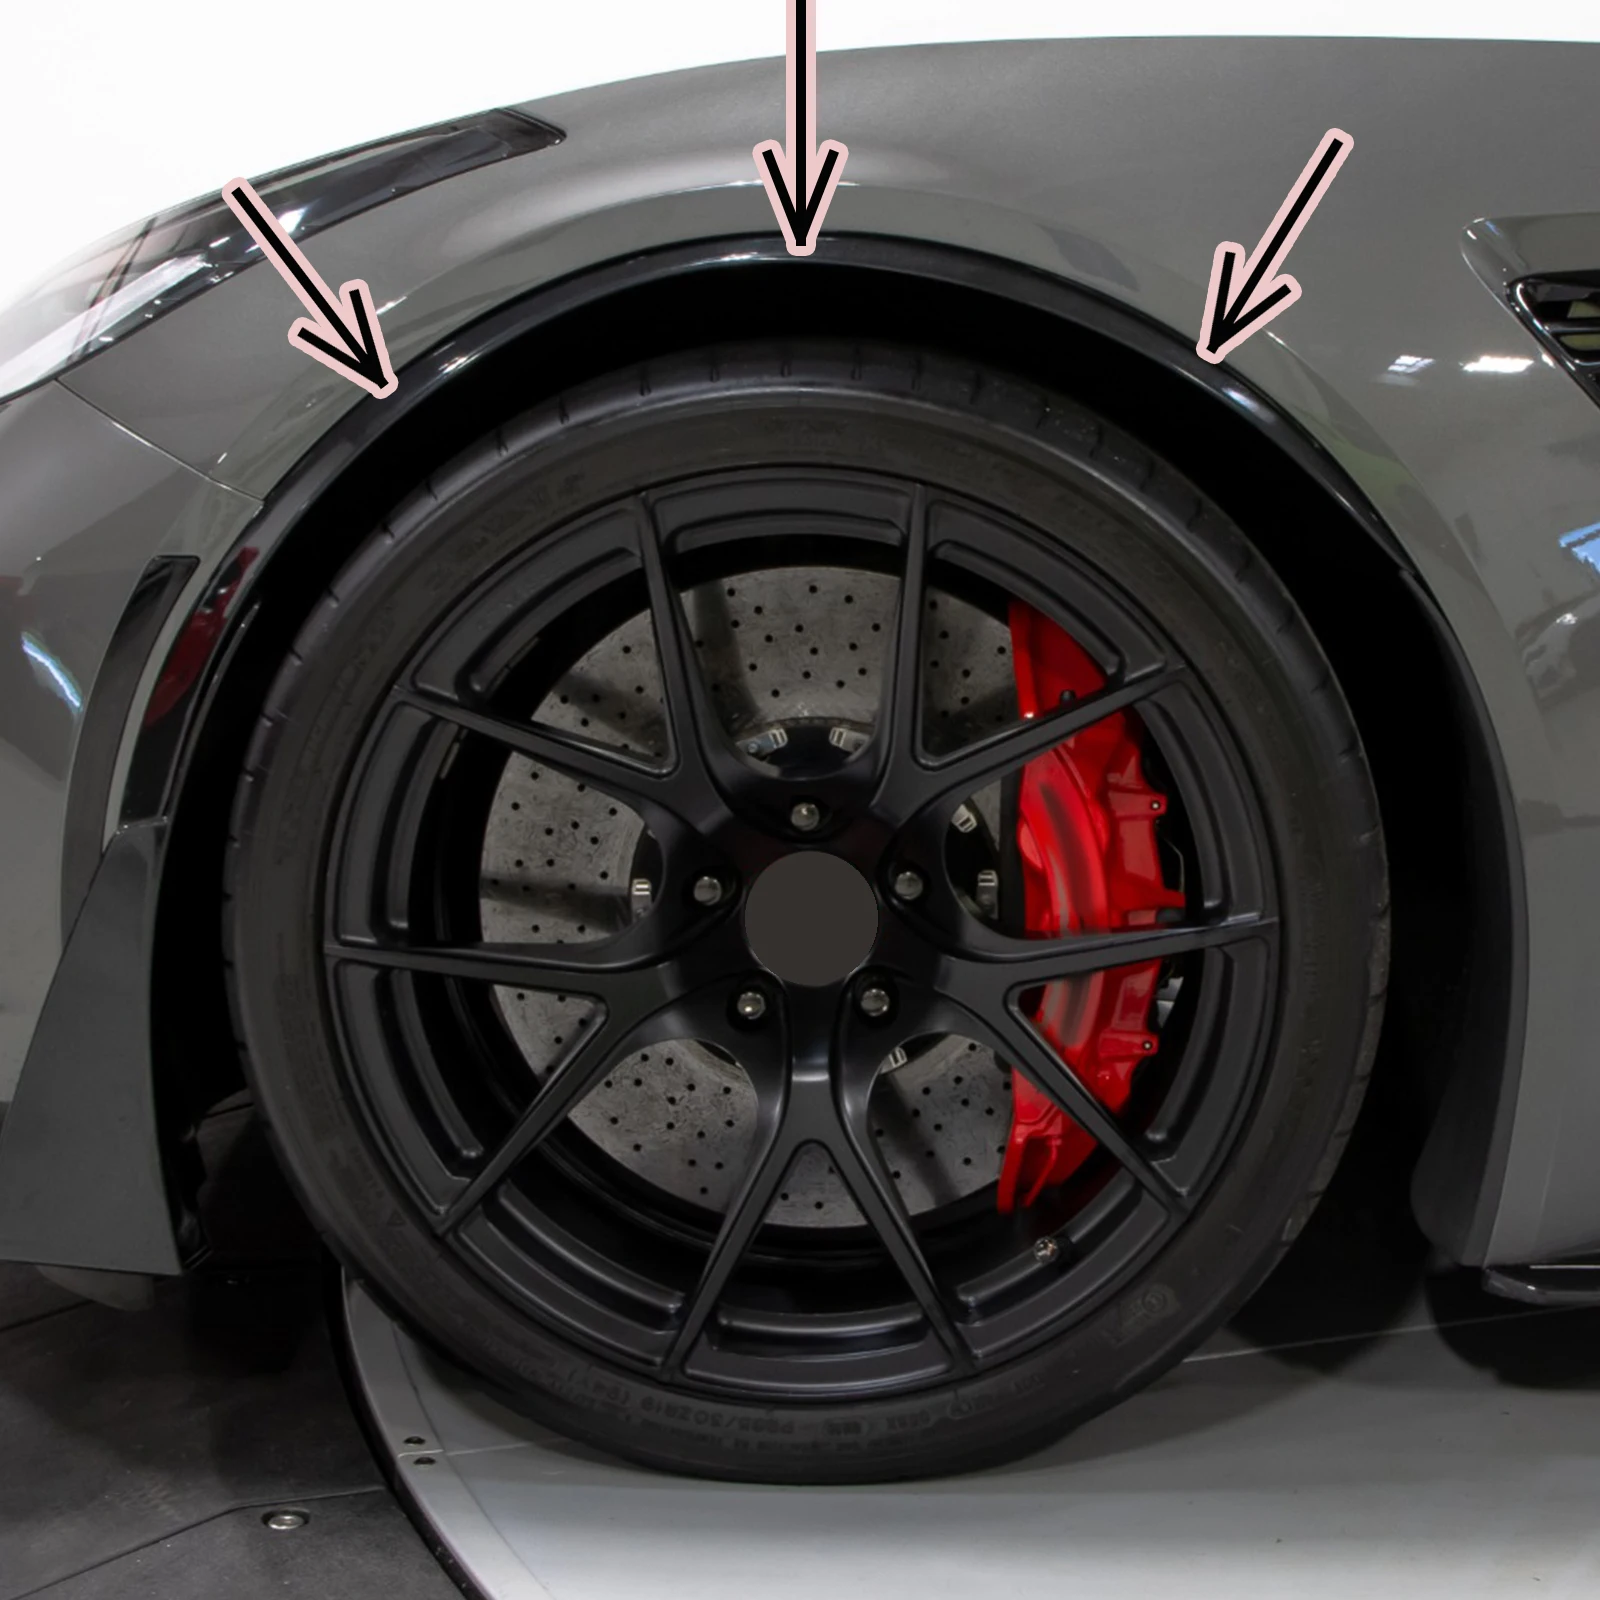 ل Corvette C7 2014-2019 2 قطعة ألياف الكربون نظرة لامع أسود سيارة الجبهة عجلة التشذيب الحاجز أقواس صب مشاعل GM نمط